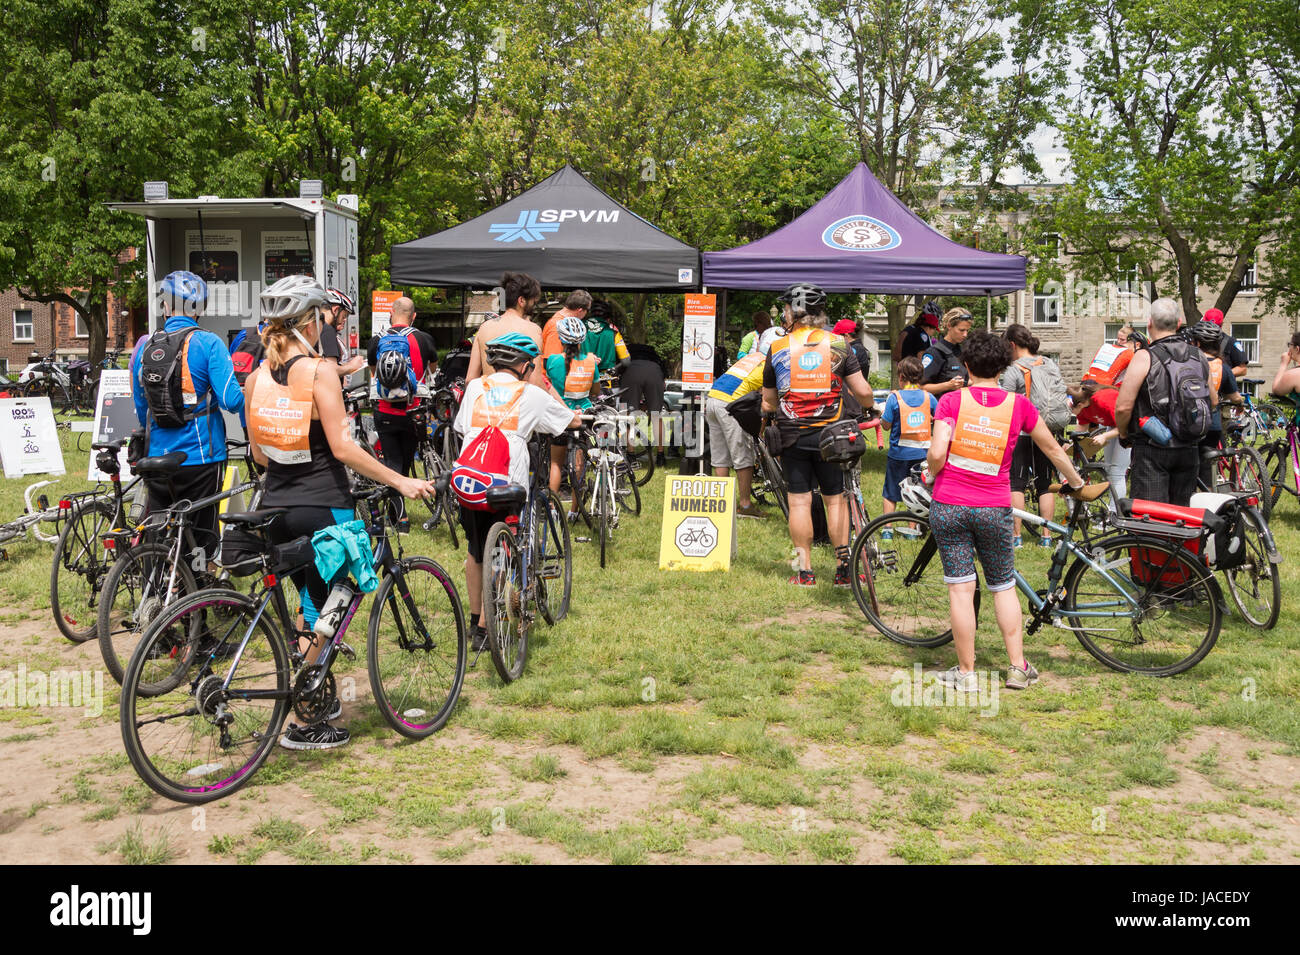 Montreal, Canadá - 4 de junio de 2017: Los ciclistas están esperando en línea en Park Jeanne Mance para obtener sus bicicletas grabado como una protección contra el robo Foto de stock